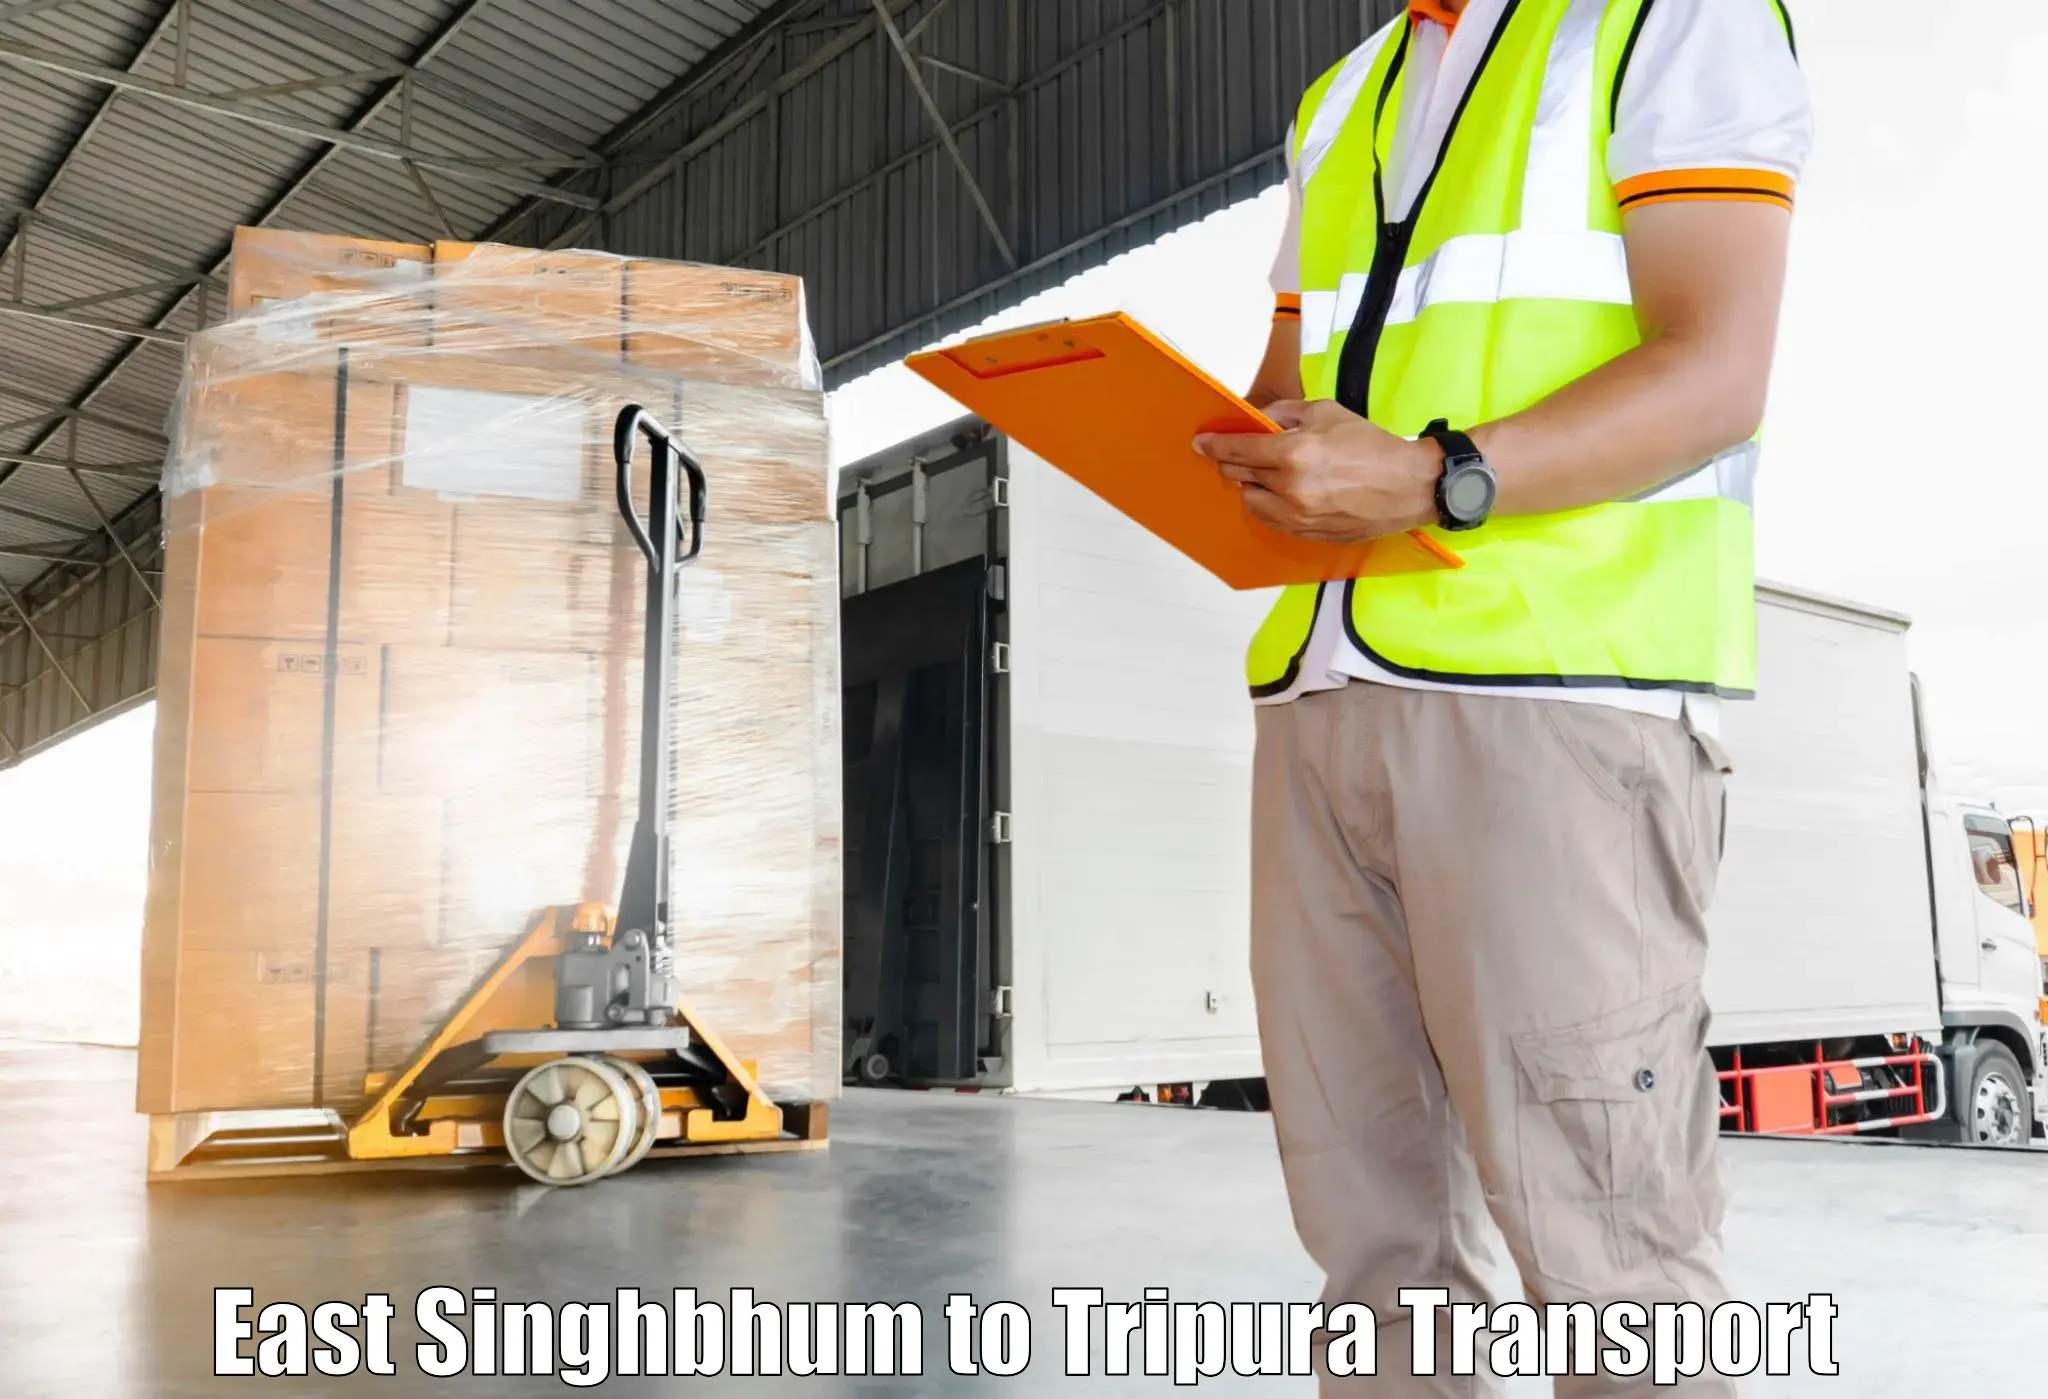 Furniture transport service East Singhbhum to Manughat